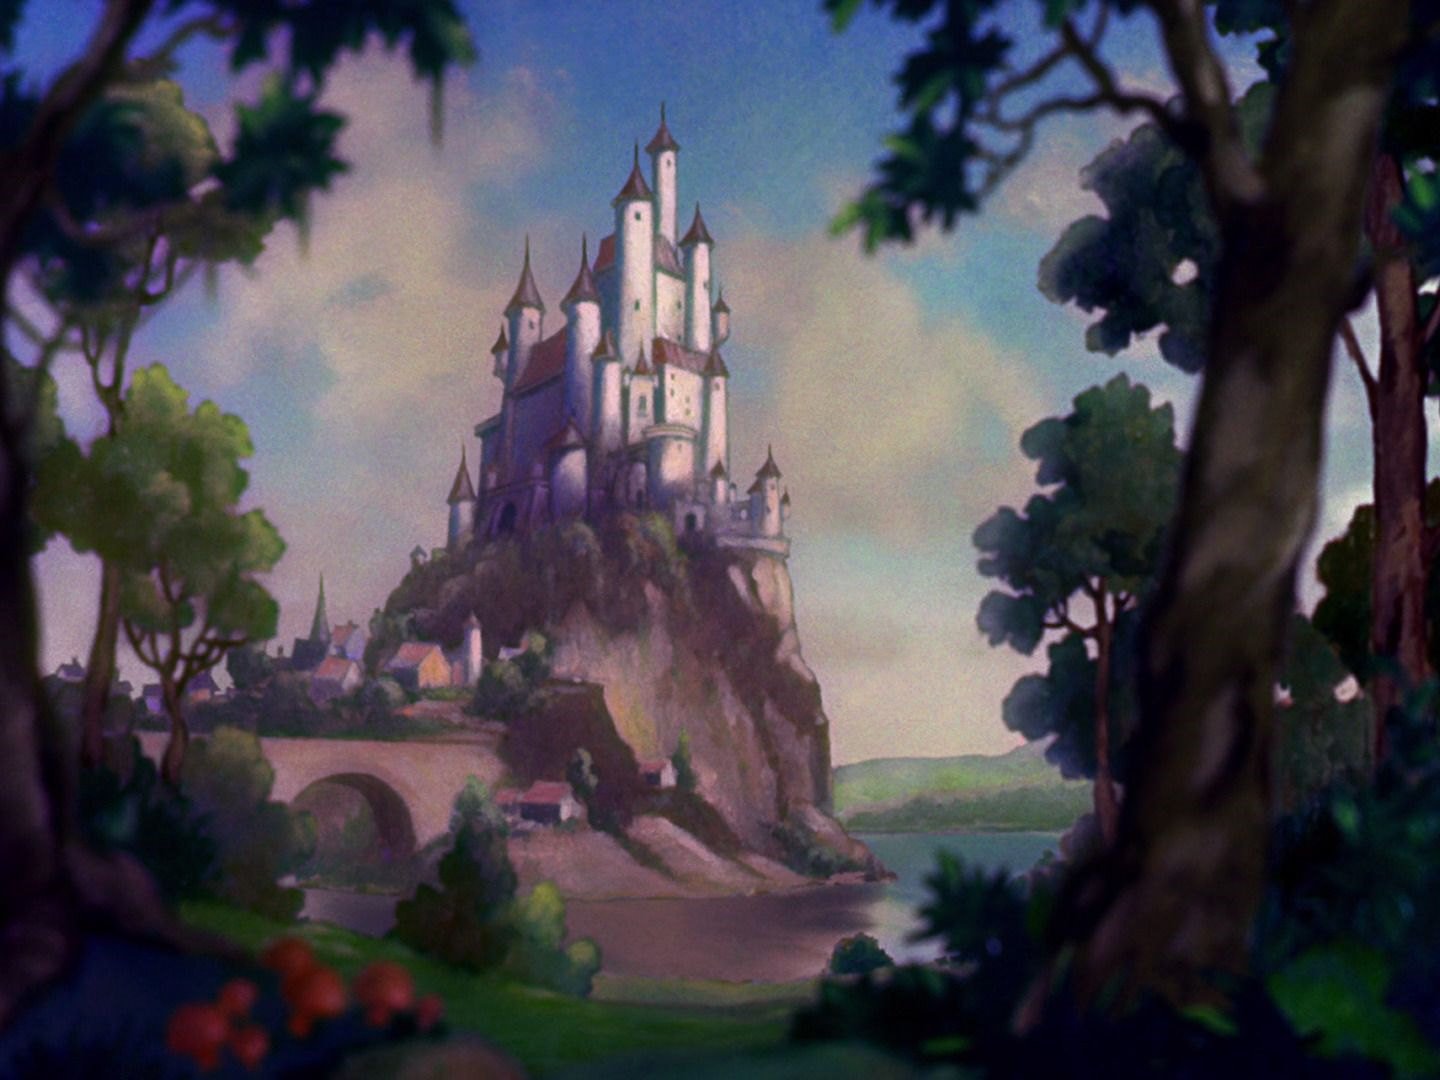 The Queen's Castle | Disney Wiki | FANDOM powered by Wikia